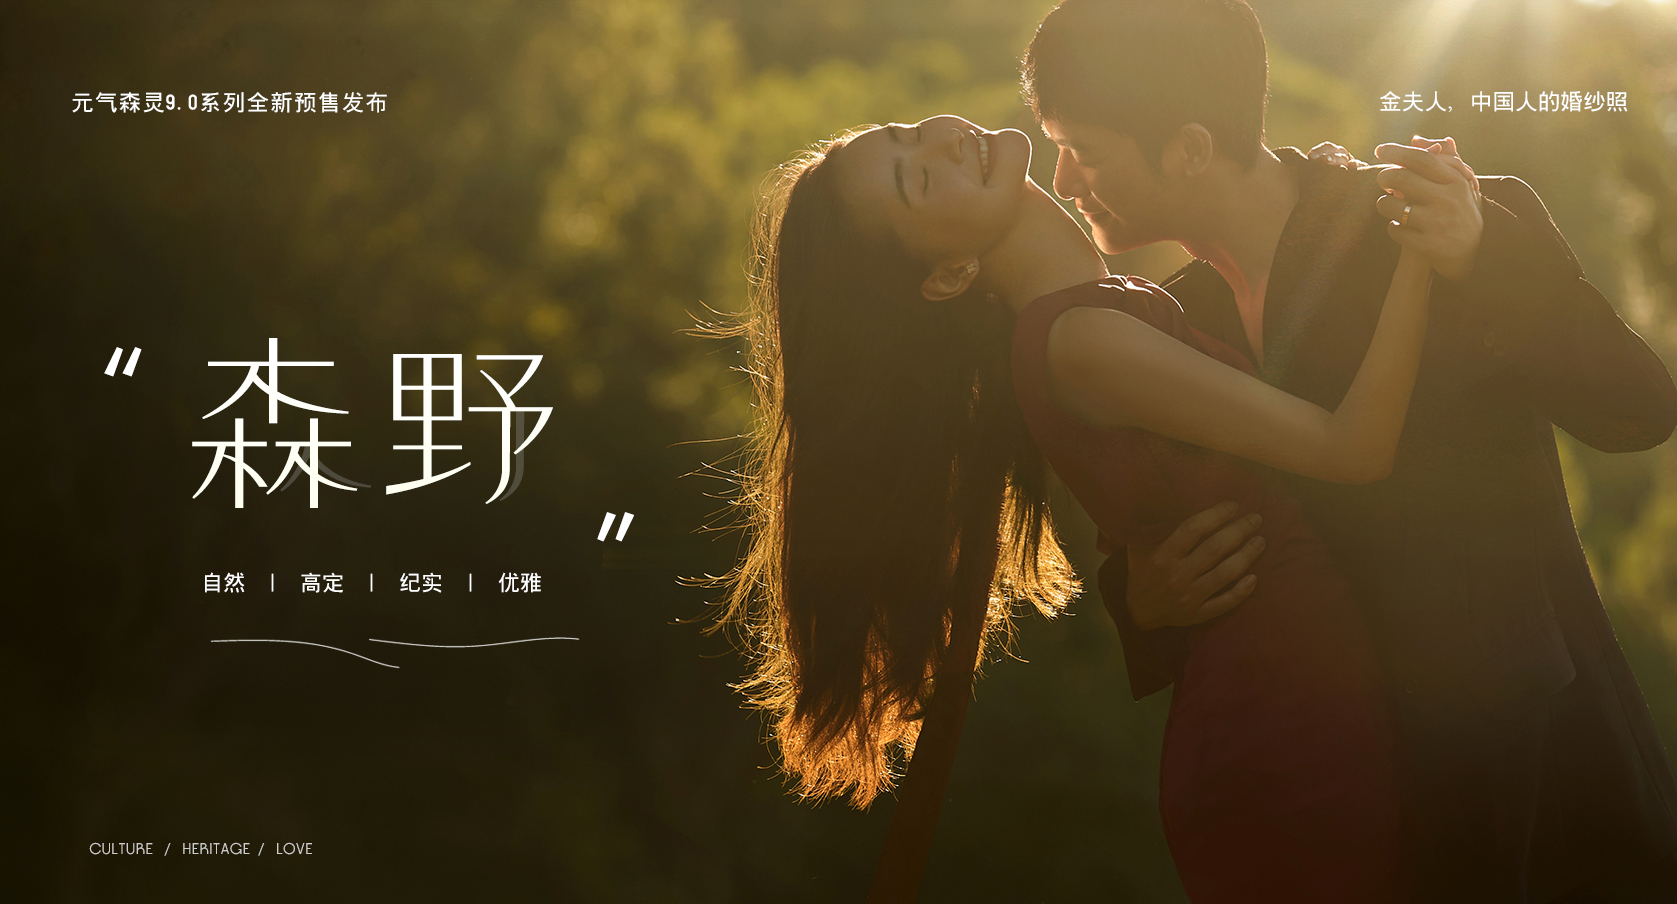 元气森灵9.0系列全新预售发布 金夫人，中国人的婚纱照 森野